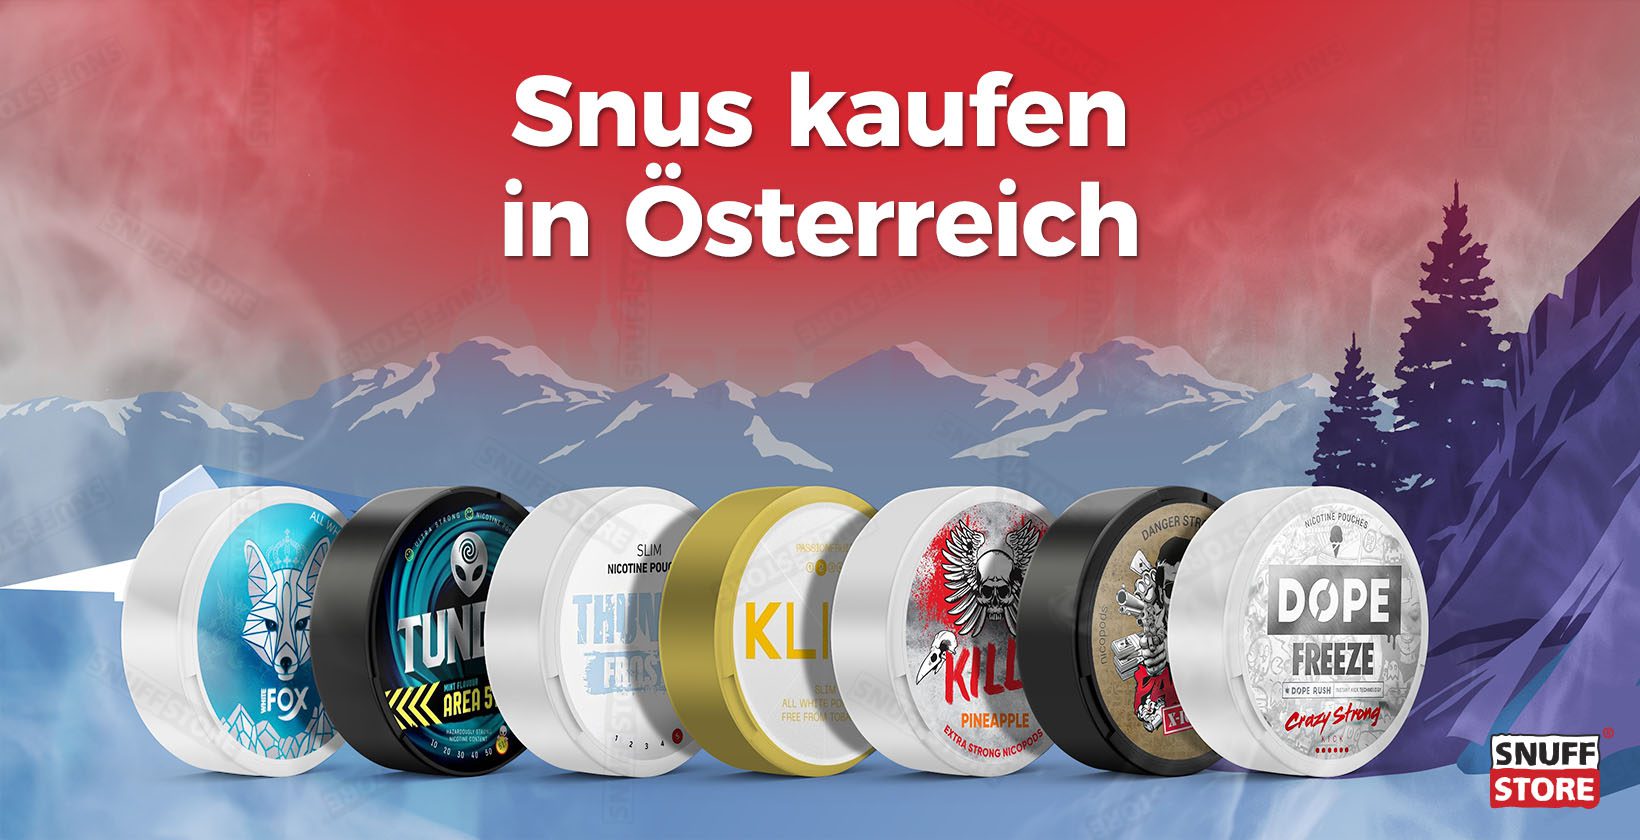 Snus kaufen in Österreich